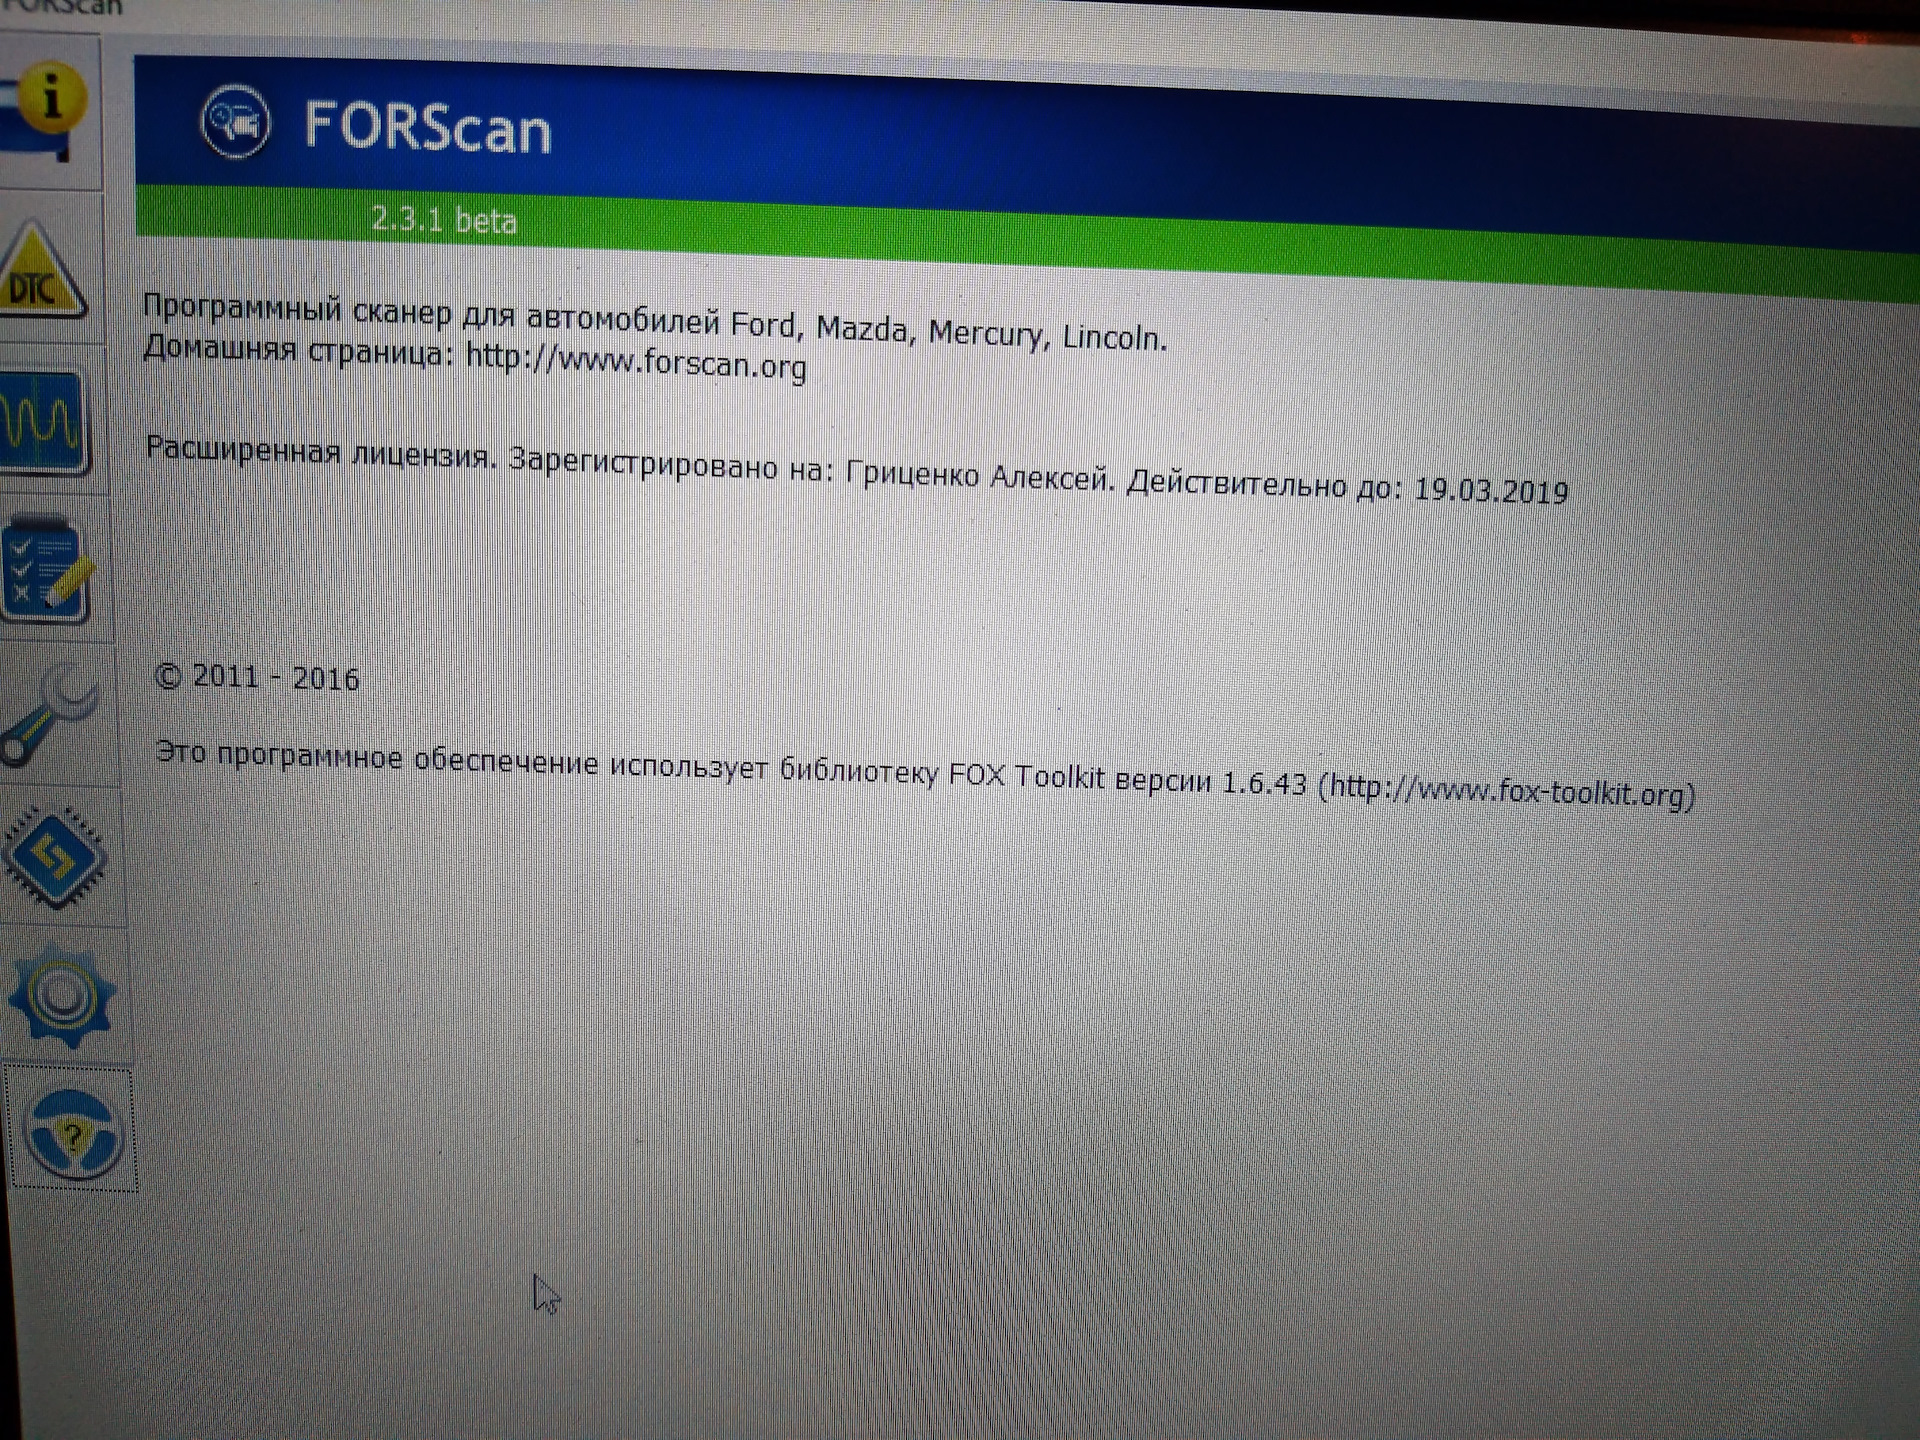 Forscan лицензия купить. FORSCAN лицензия. Форскан активация лицензии. FORSCAN ключ активации. FORSCAN расширенная лицензия.